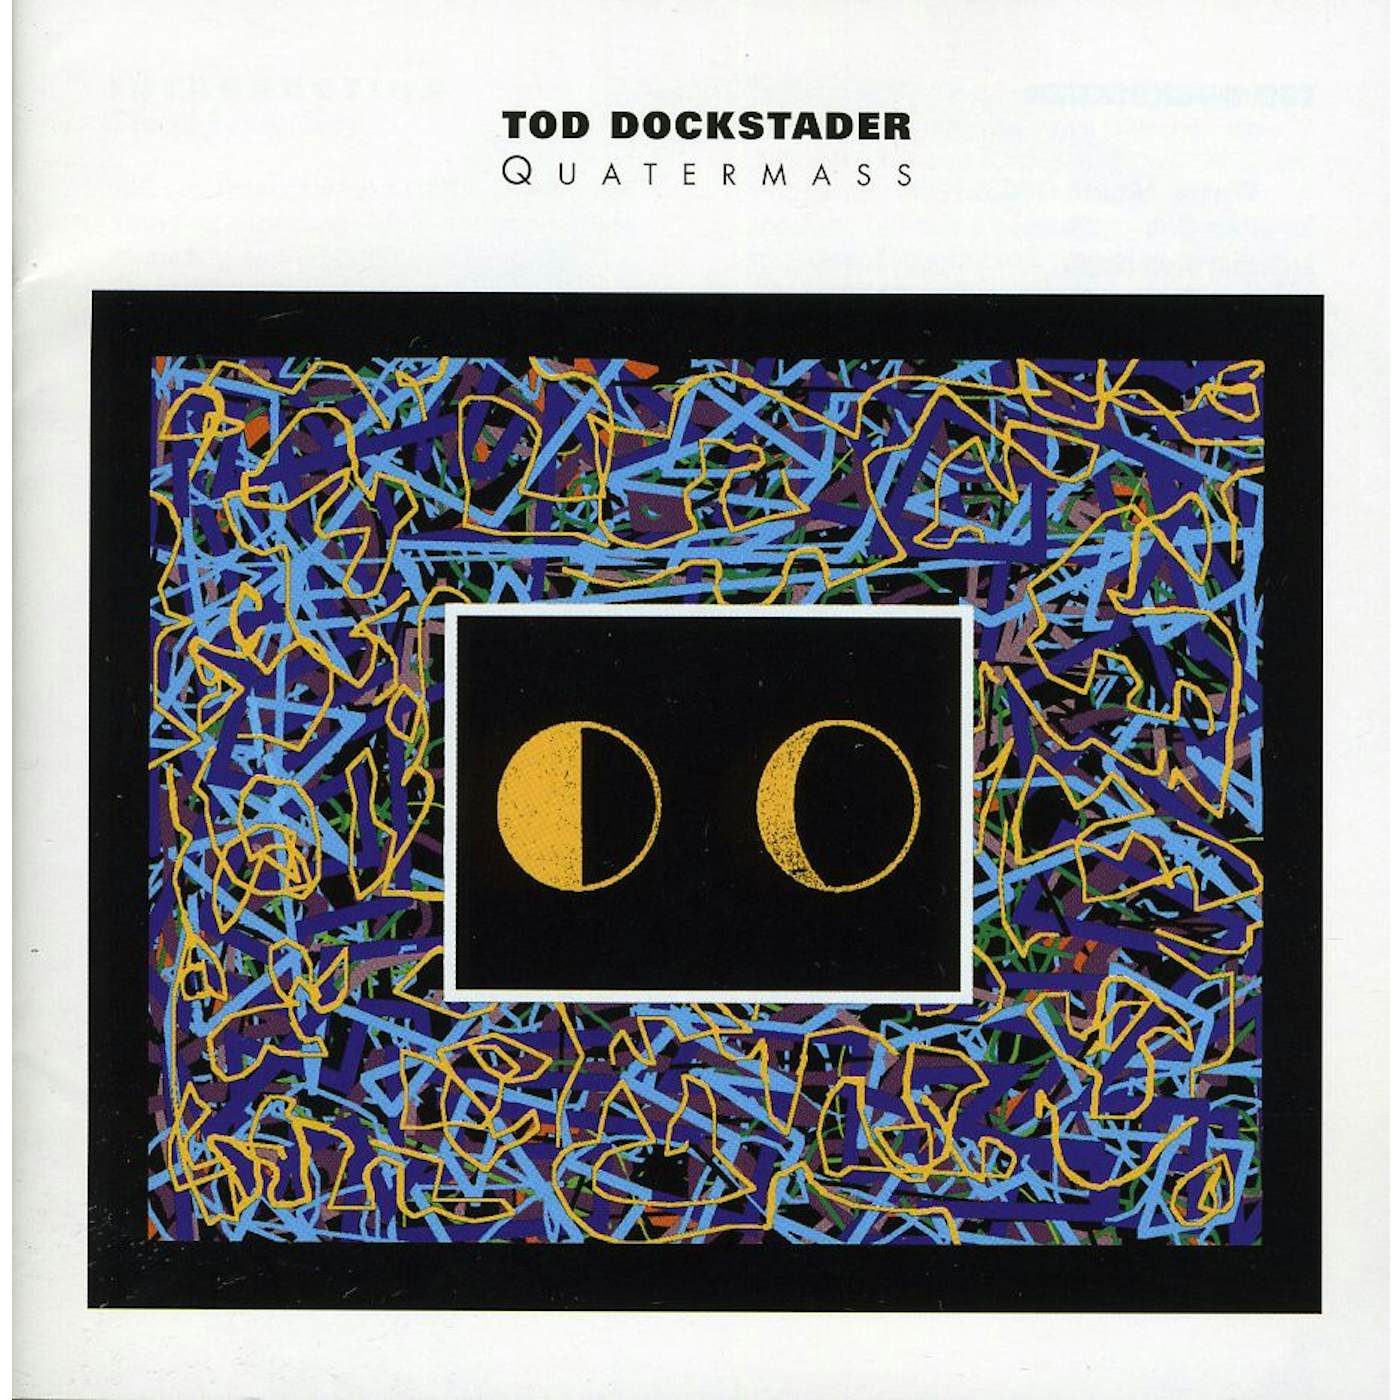 Tod Dockstader QUATERMASS CD